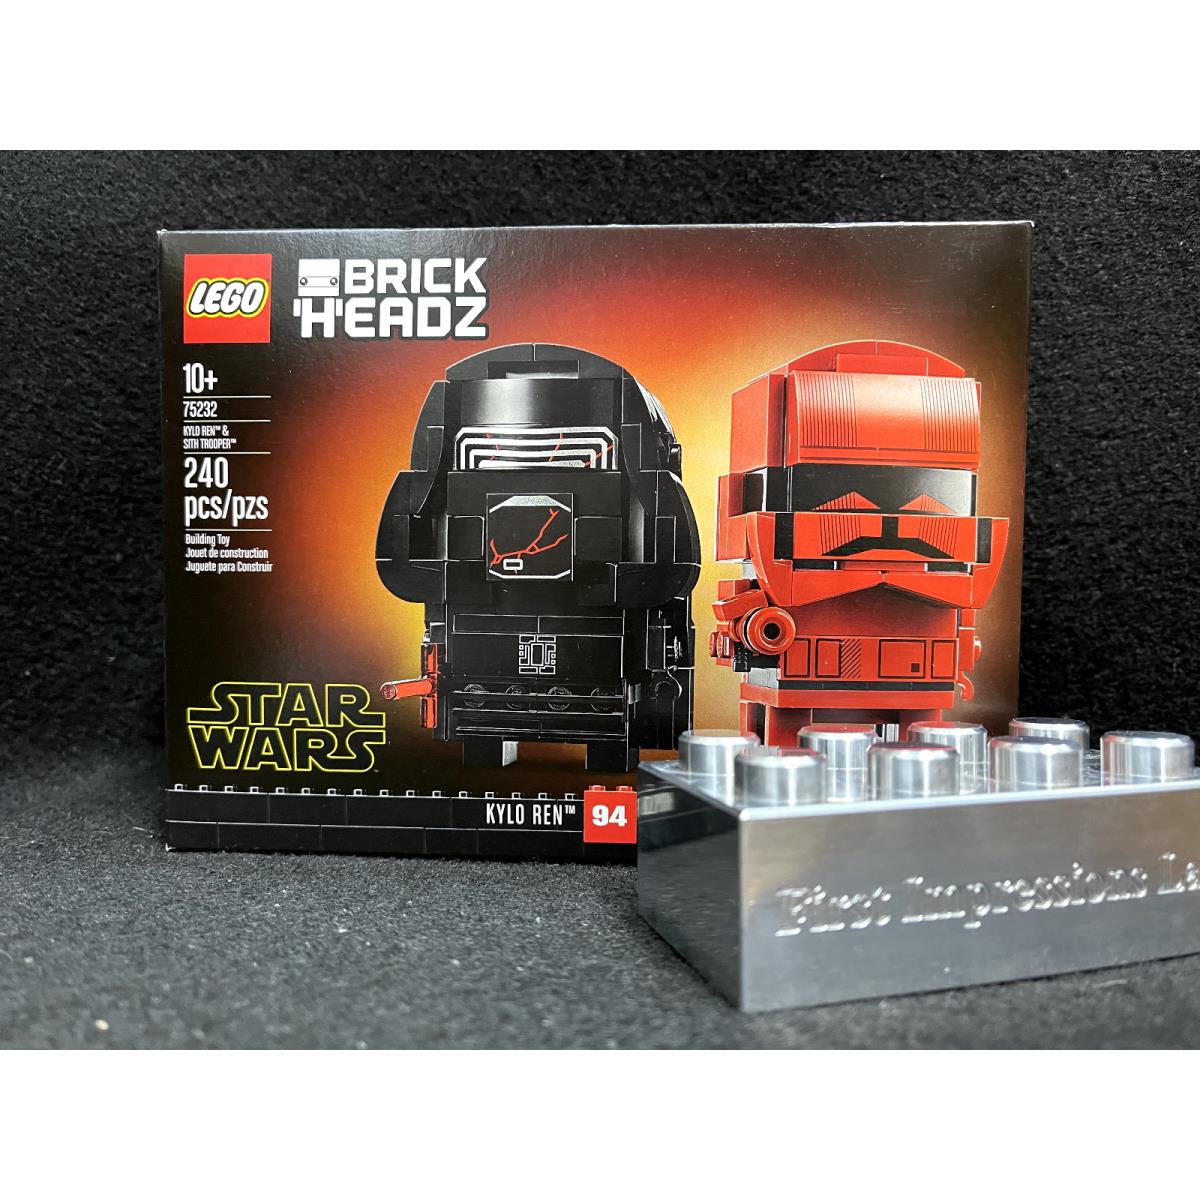 Lego 75232 2019 Brickheadz Star Wars Kylo Ren Sith Trooper New/nisb - Retired